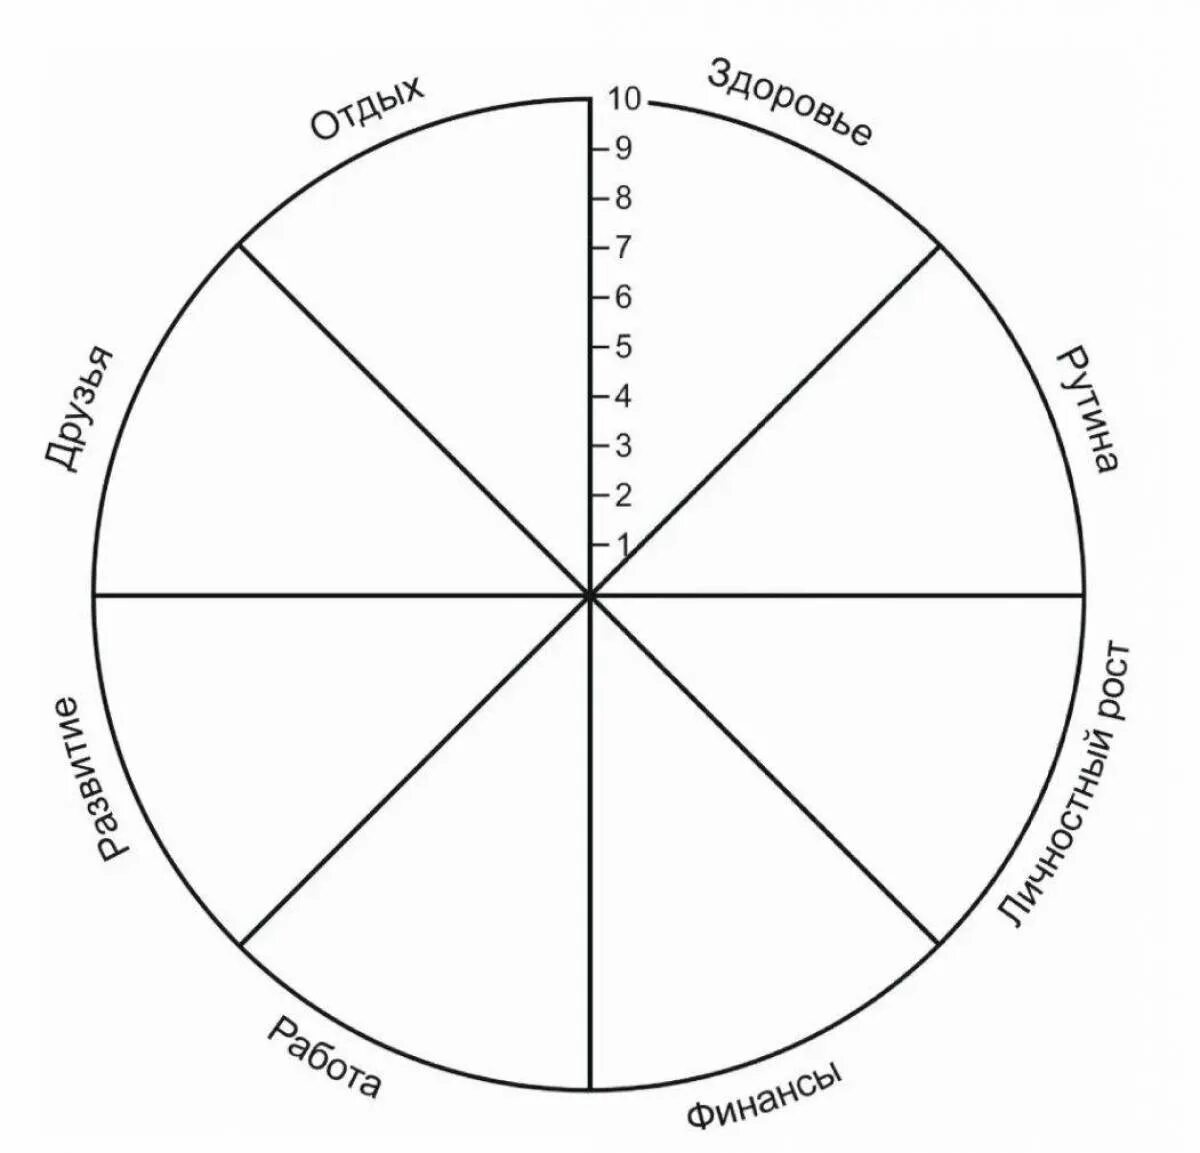 Круг надо ли. Колесо жизненного баланса 8 сфер. Схема колеса жизненного баланса. Коле/о жизненного баланса. Колесо жизни, баланс жизни (8 основных сфер).